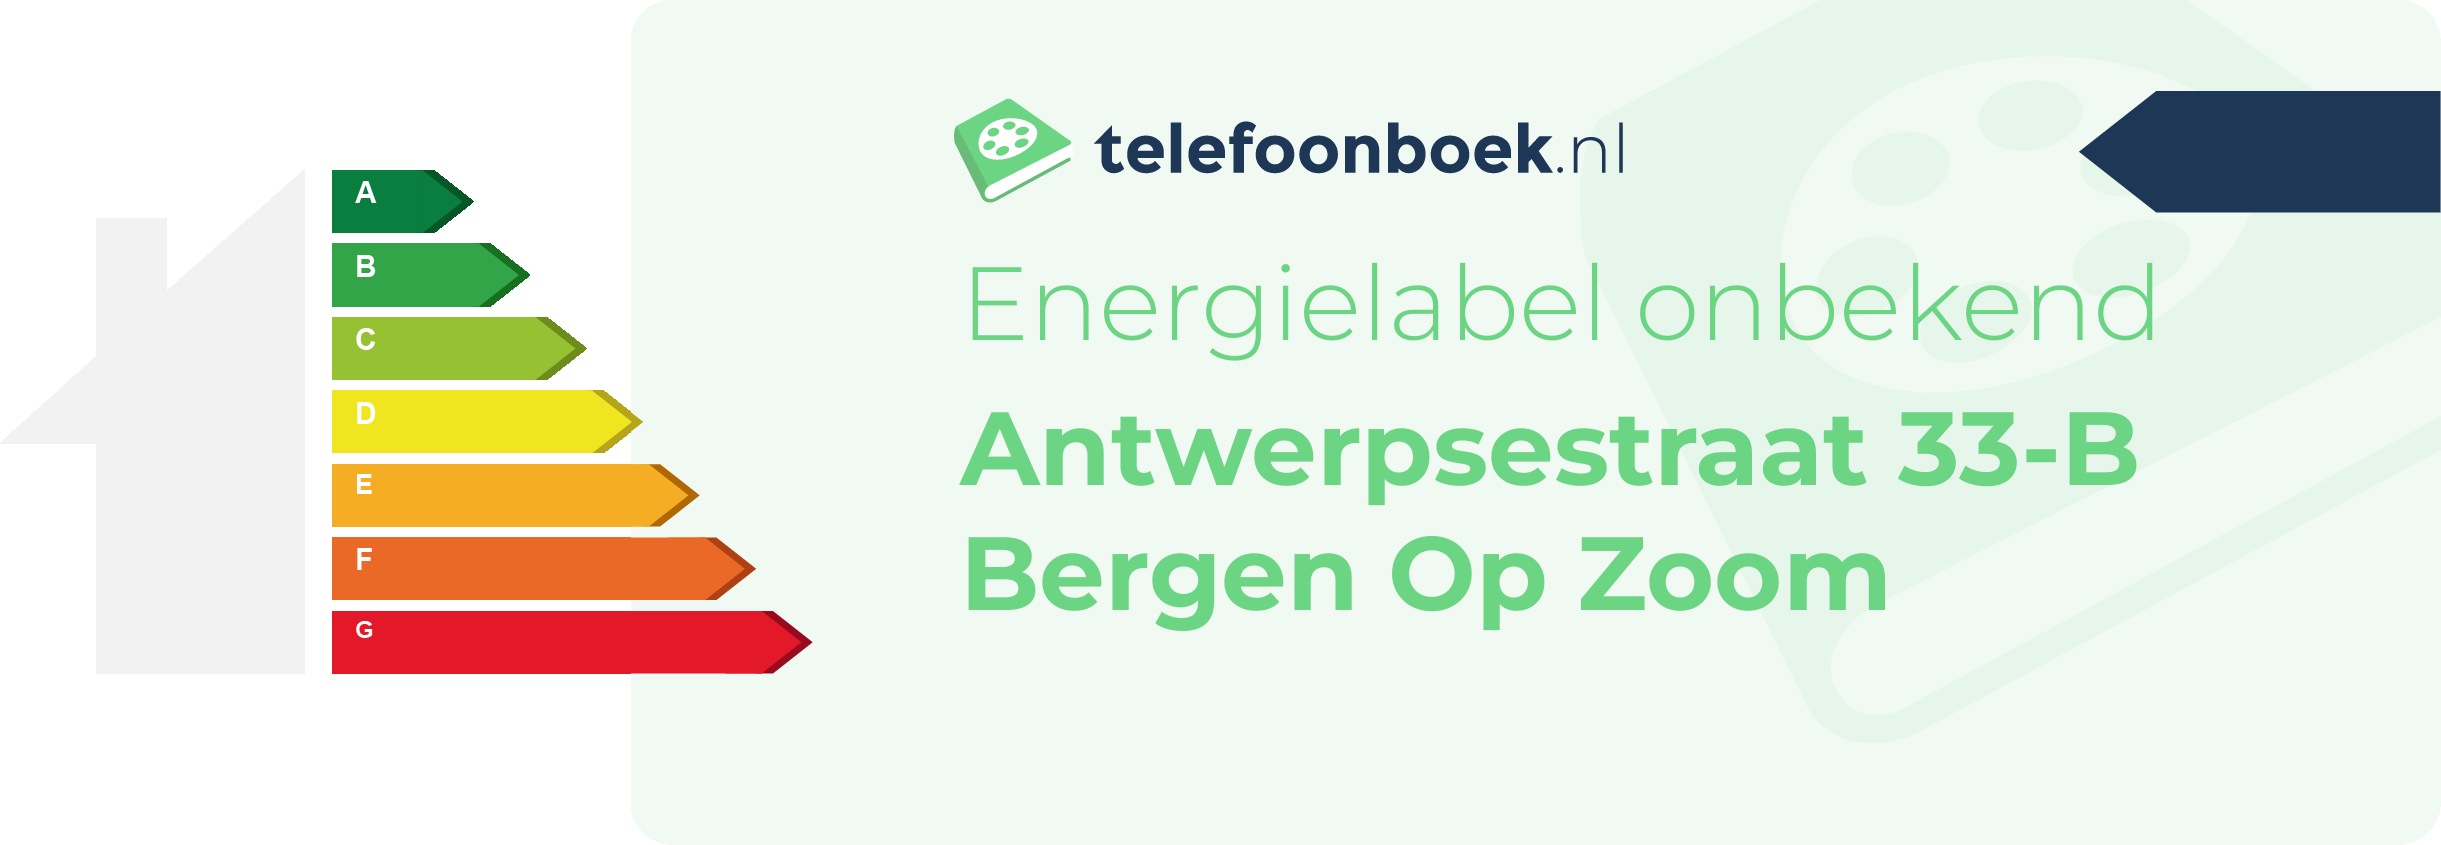 Energielabel Antwerpsestraat 33-B Bergen Op Zoom